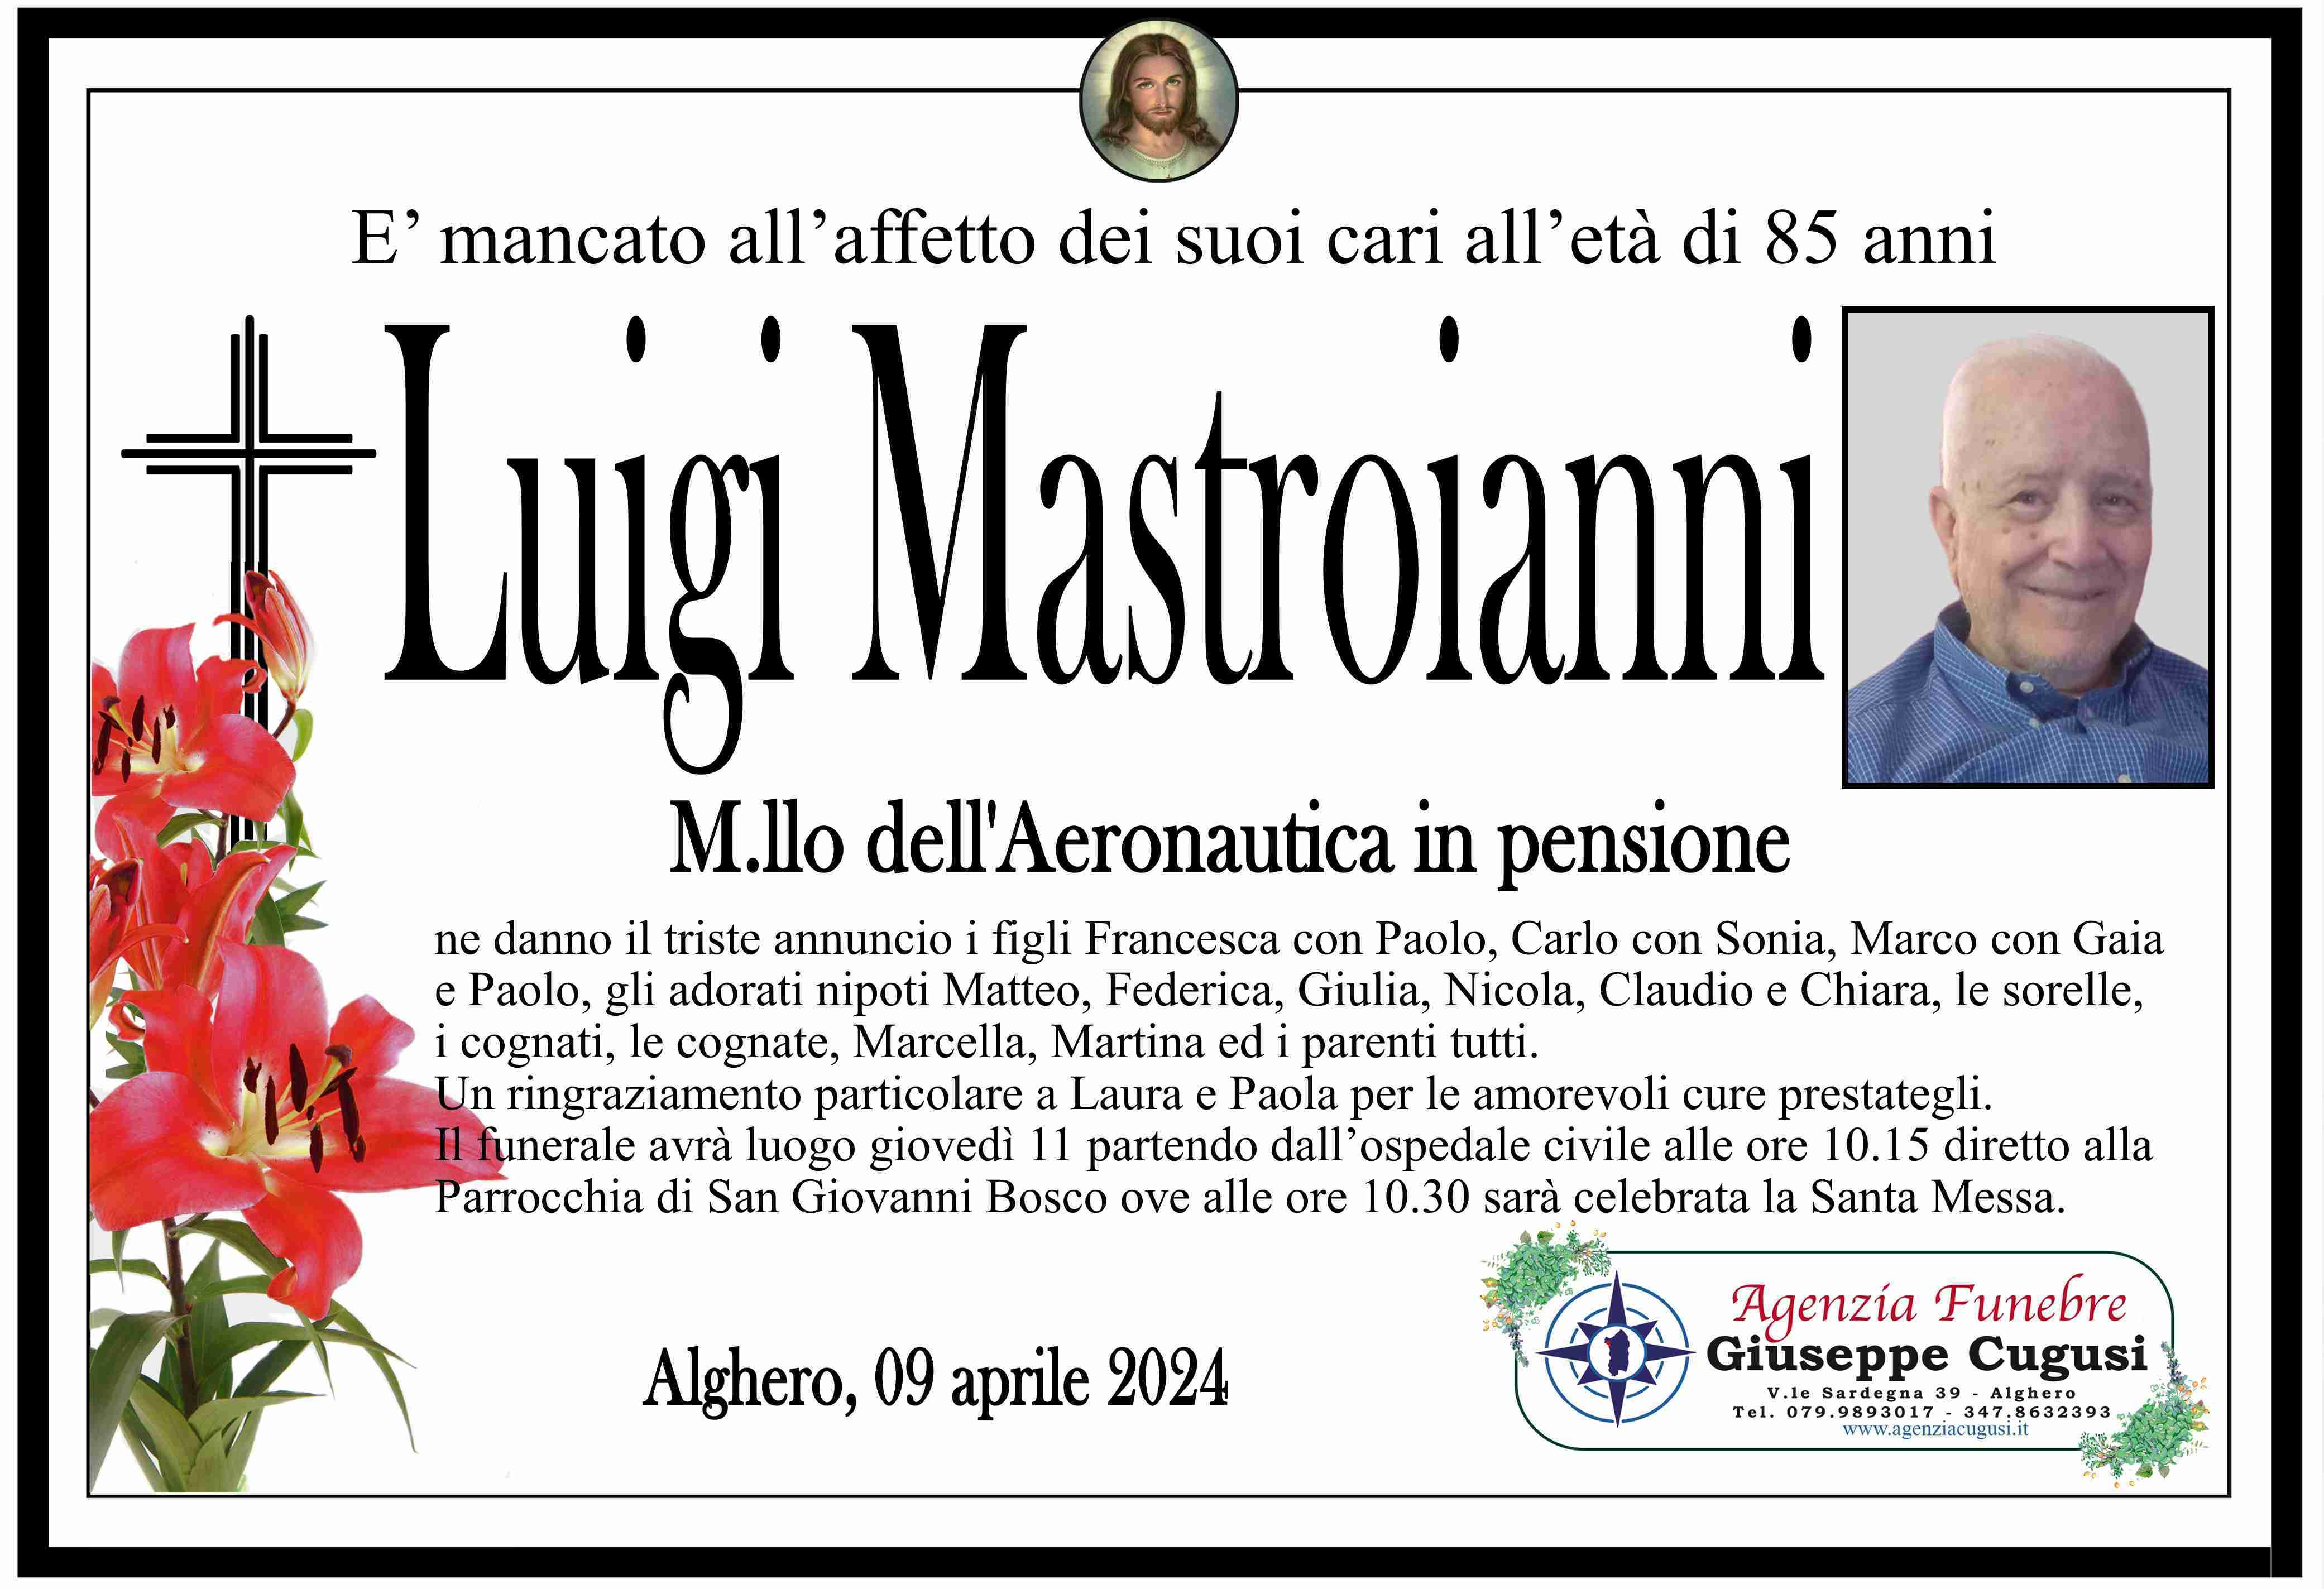 Luigi Mastroianni